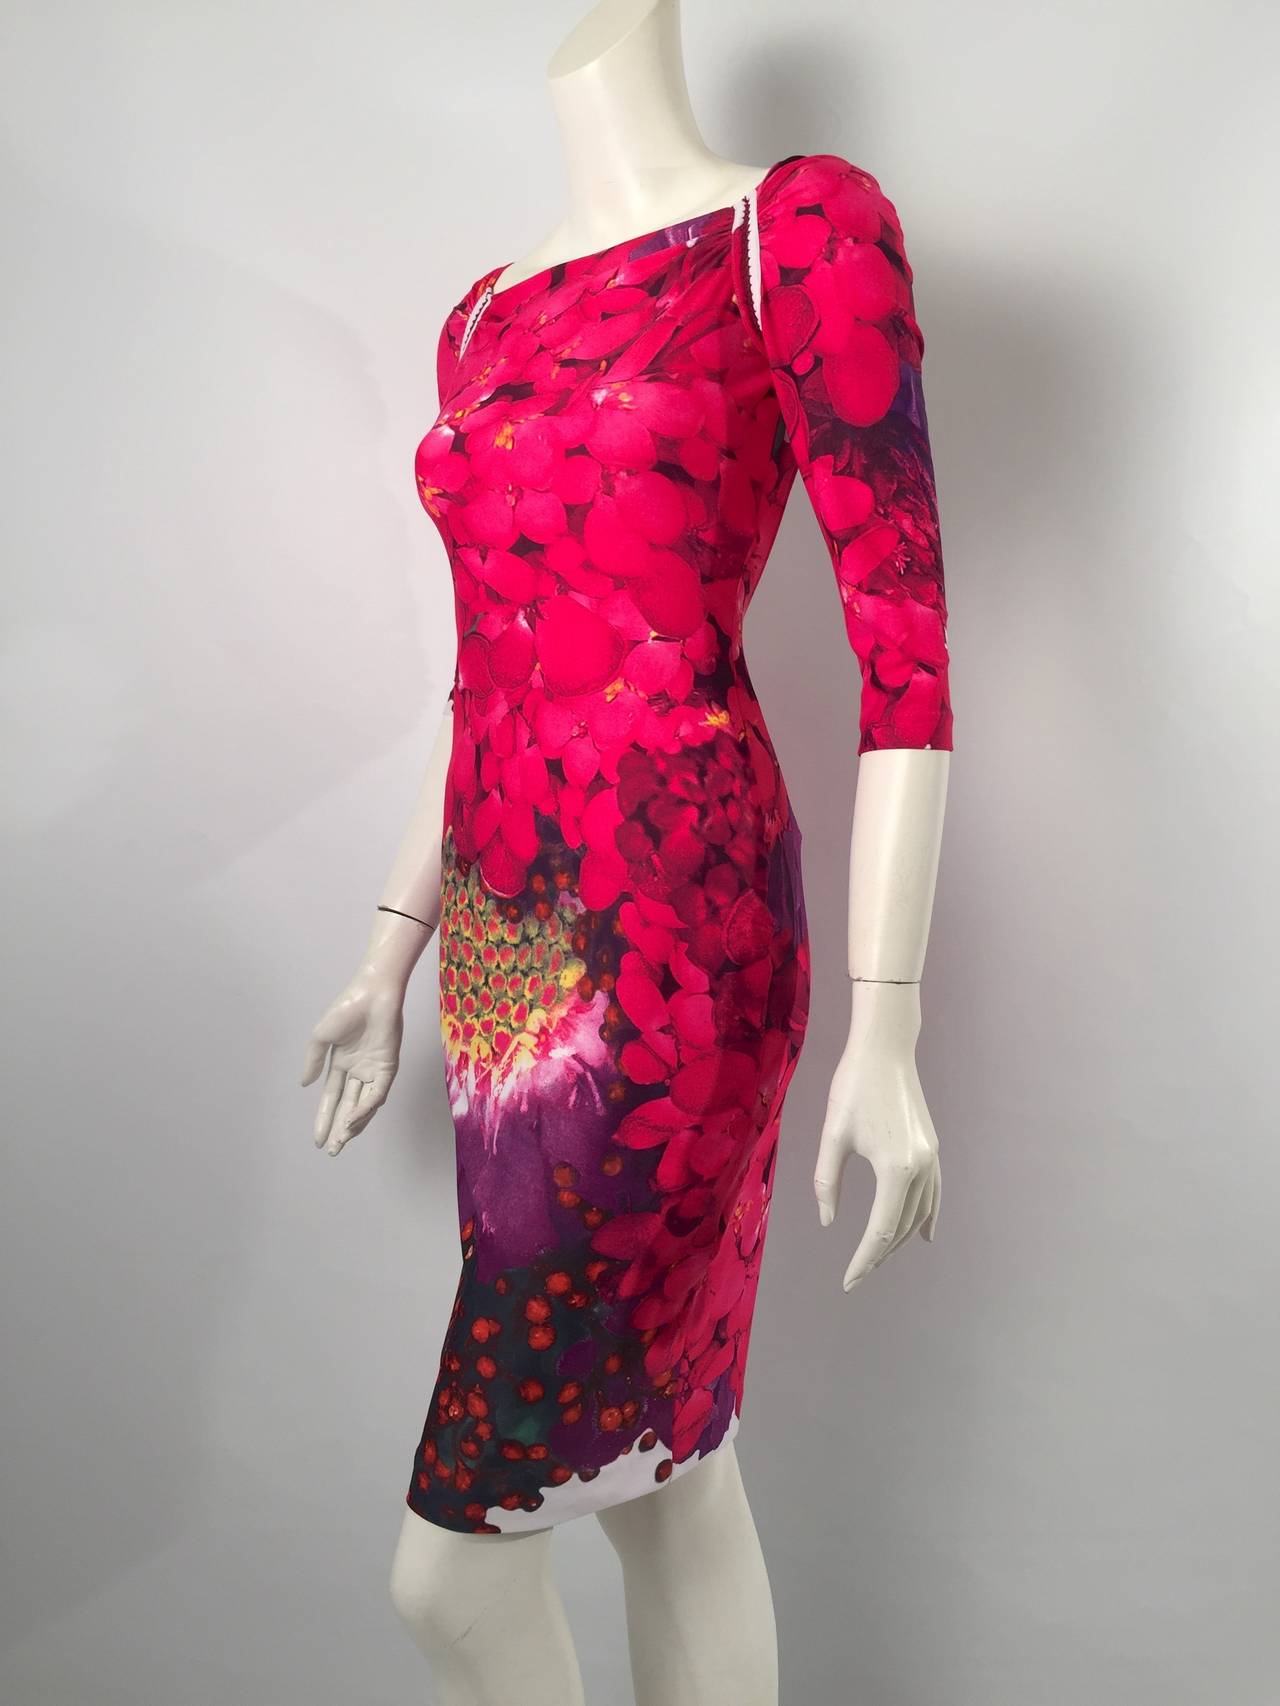 Women's Brand New Roberto Cavalli Wild Berry Print Dress